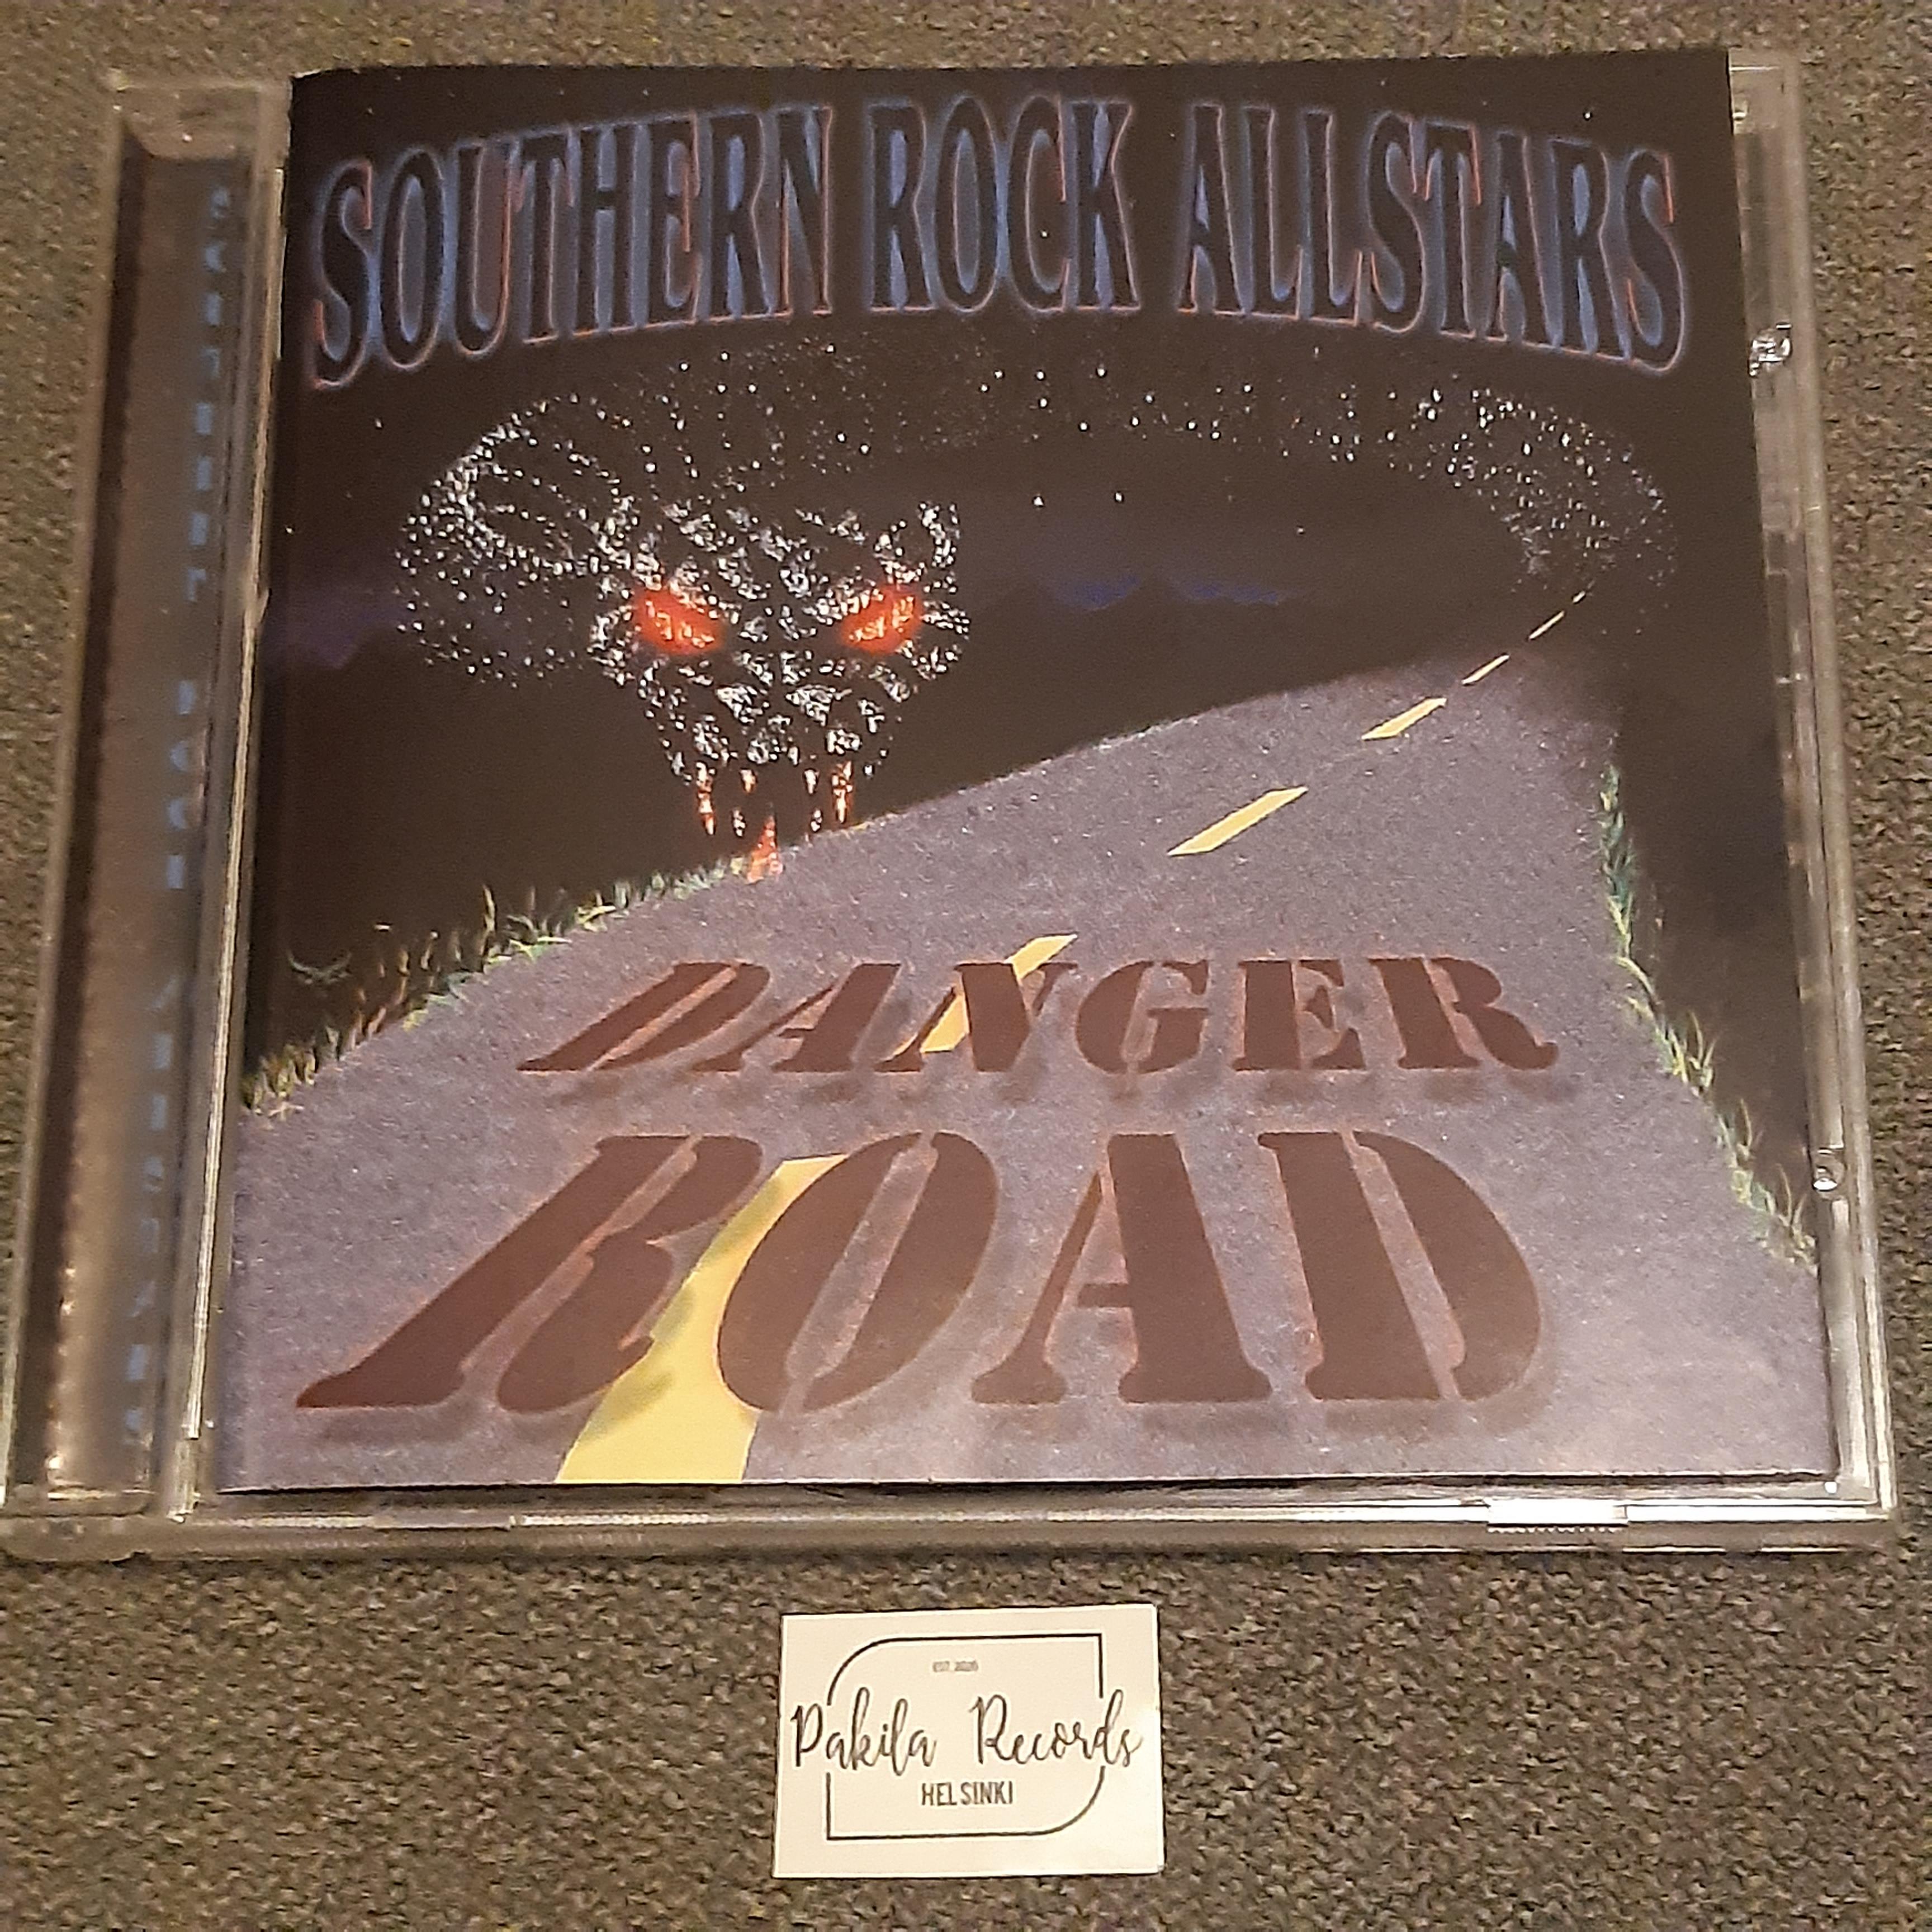 Southern Rock Allstars - Danger Road - CD (käytetty)